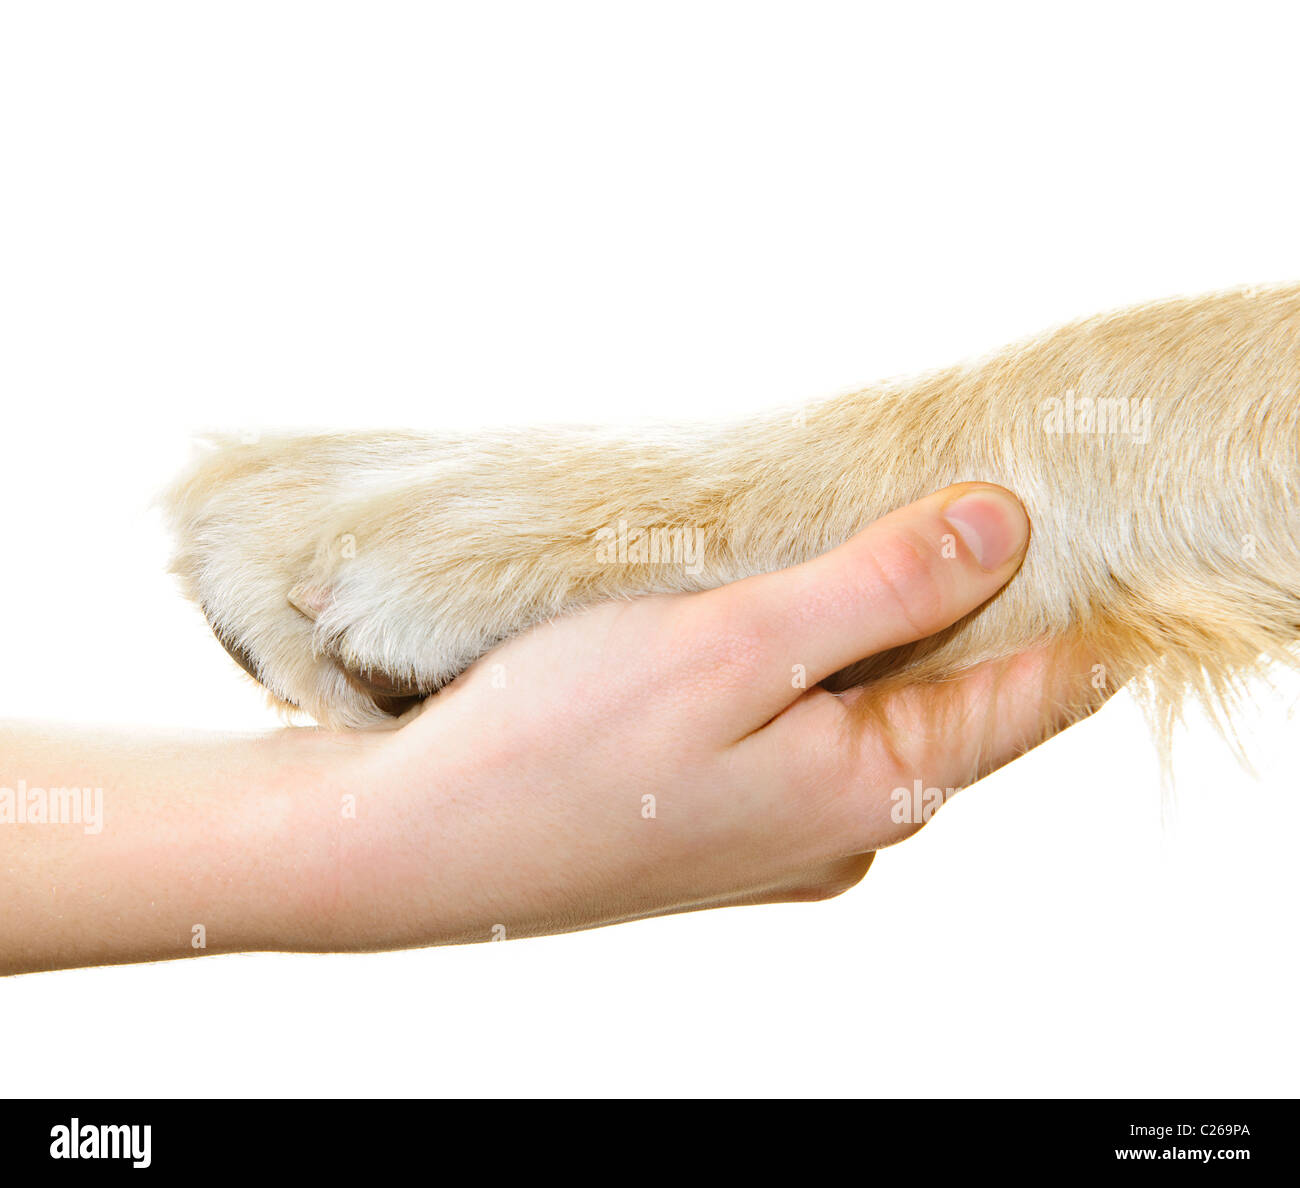 Mano umana azienda zampa del cane isolato su sfondo bianco Foto Stock